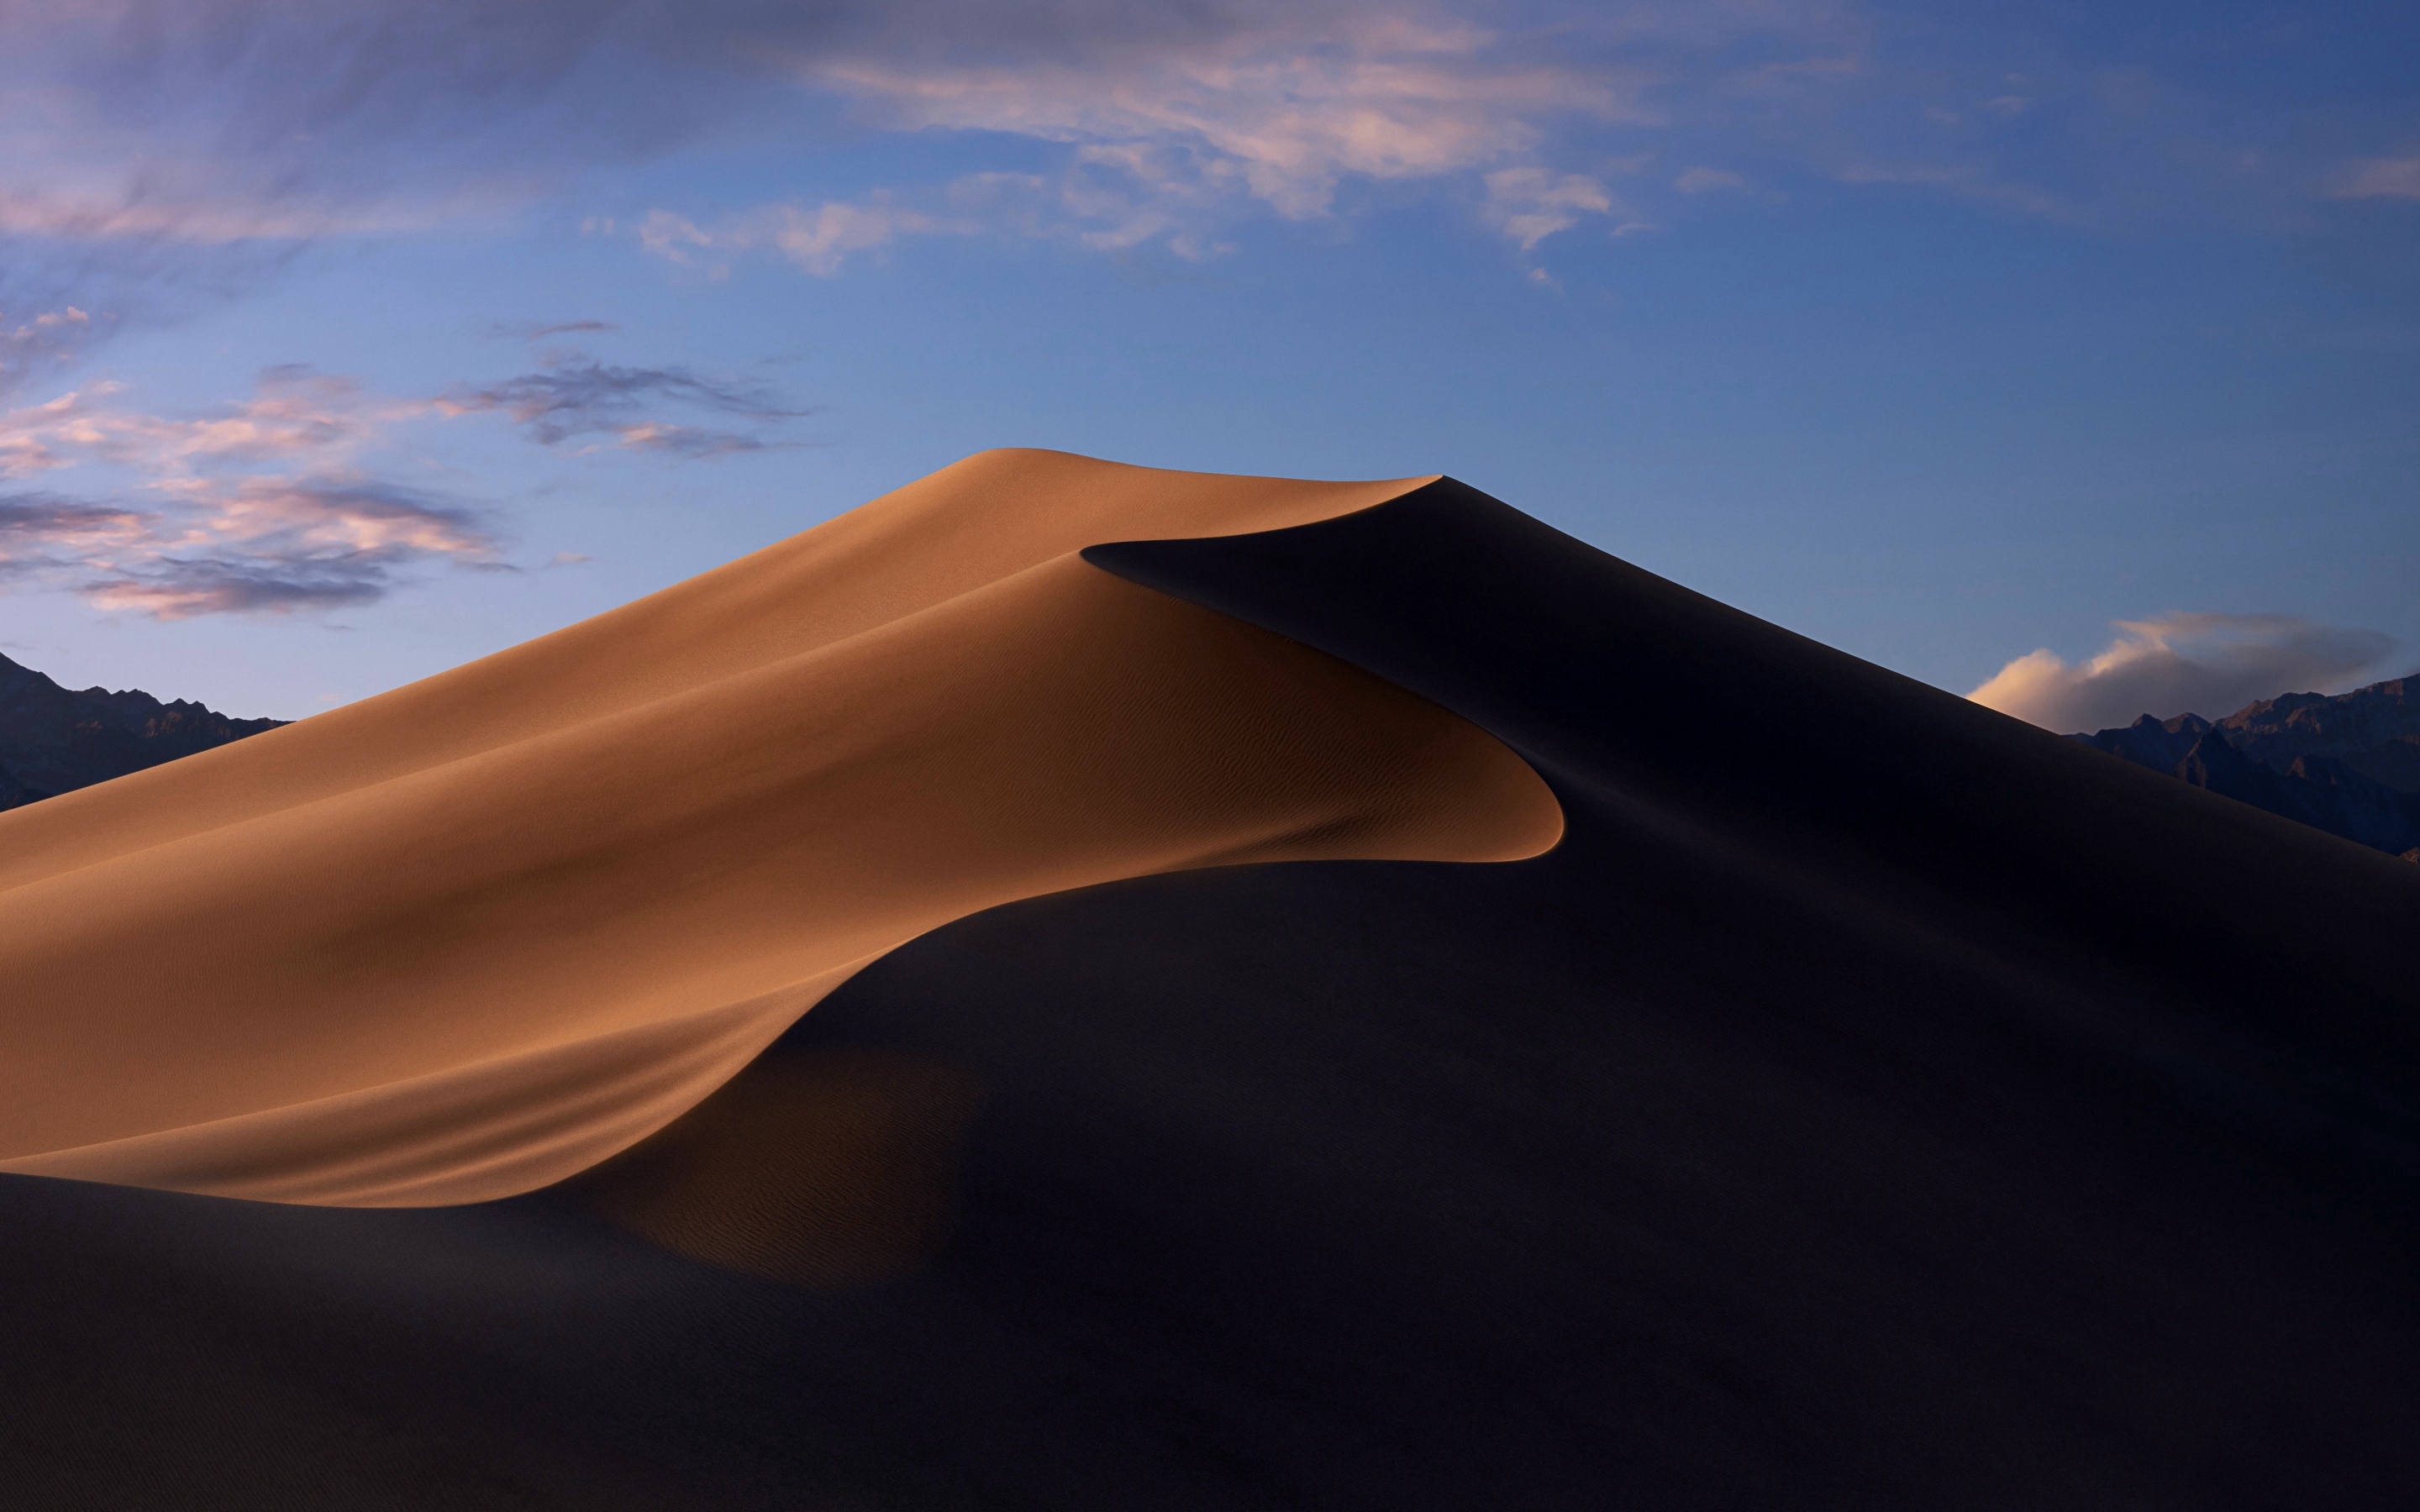 macOS Mojave 4K Wallpaper, Sand Dunes, Mojave Desert, California